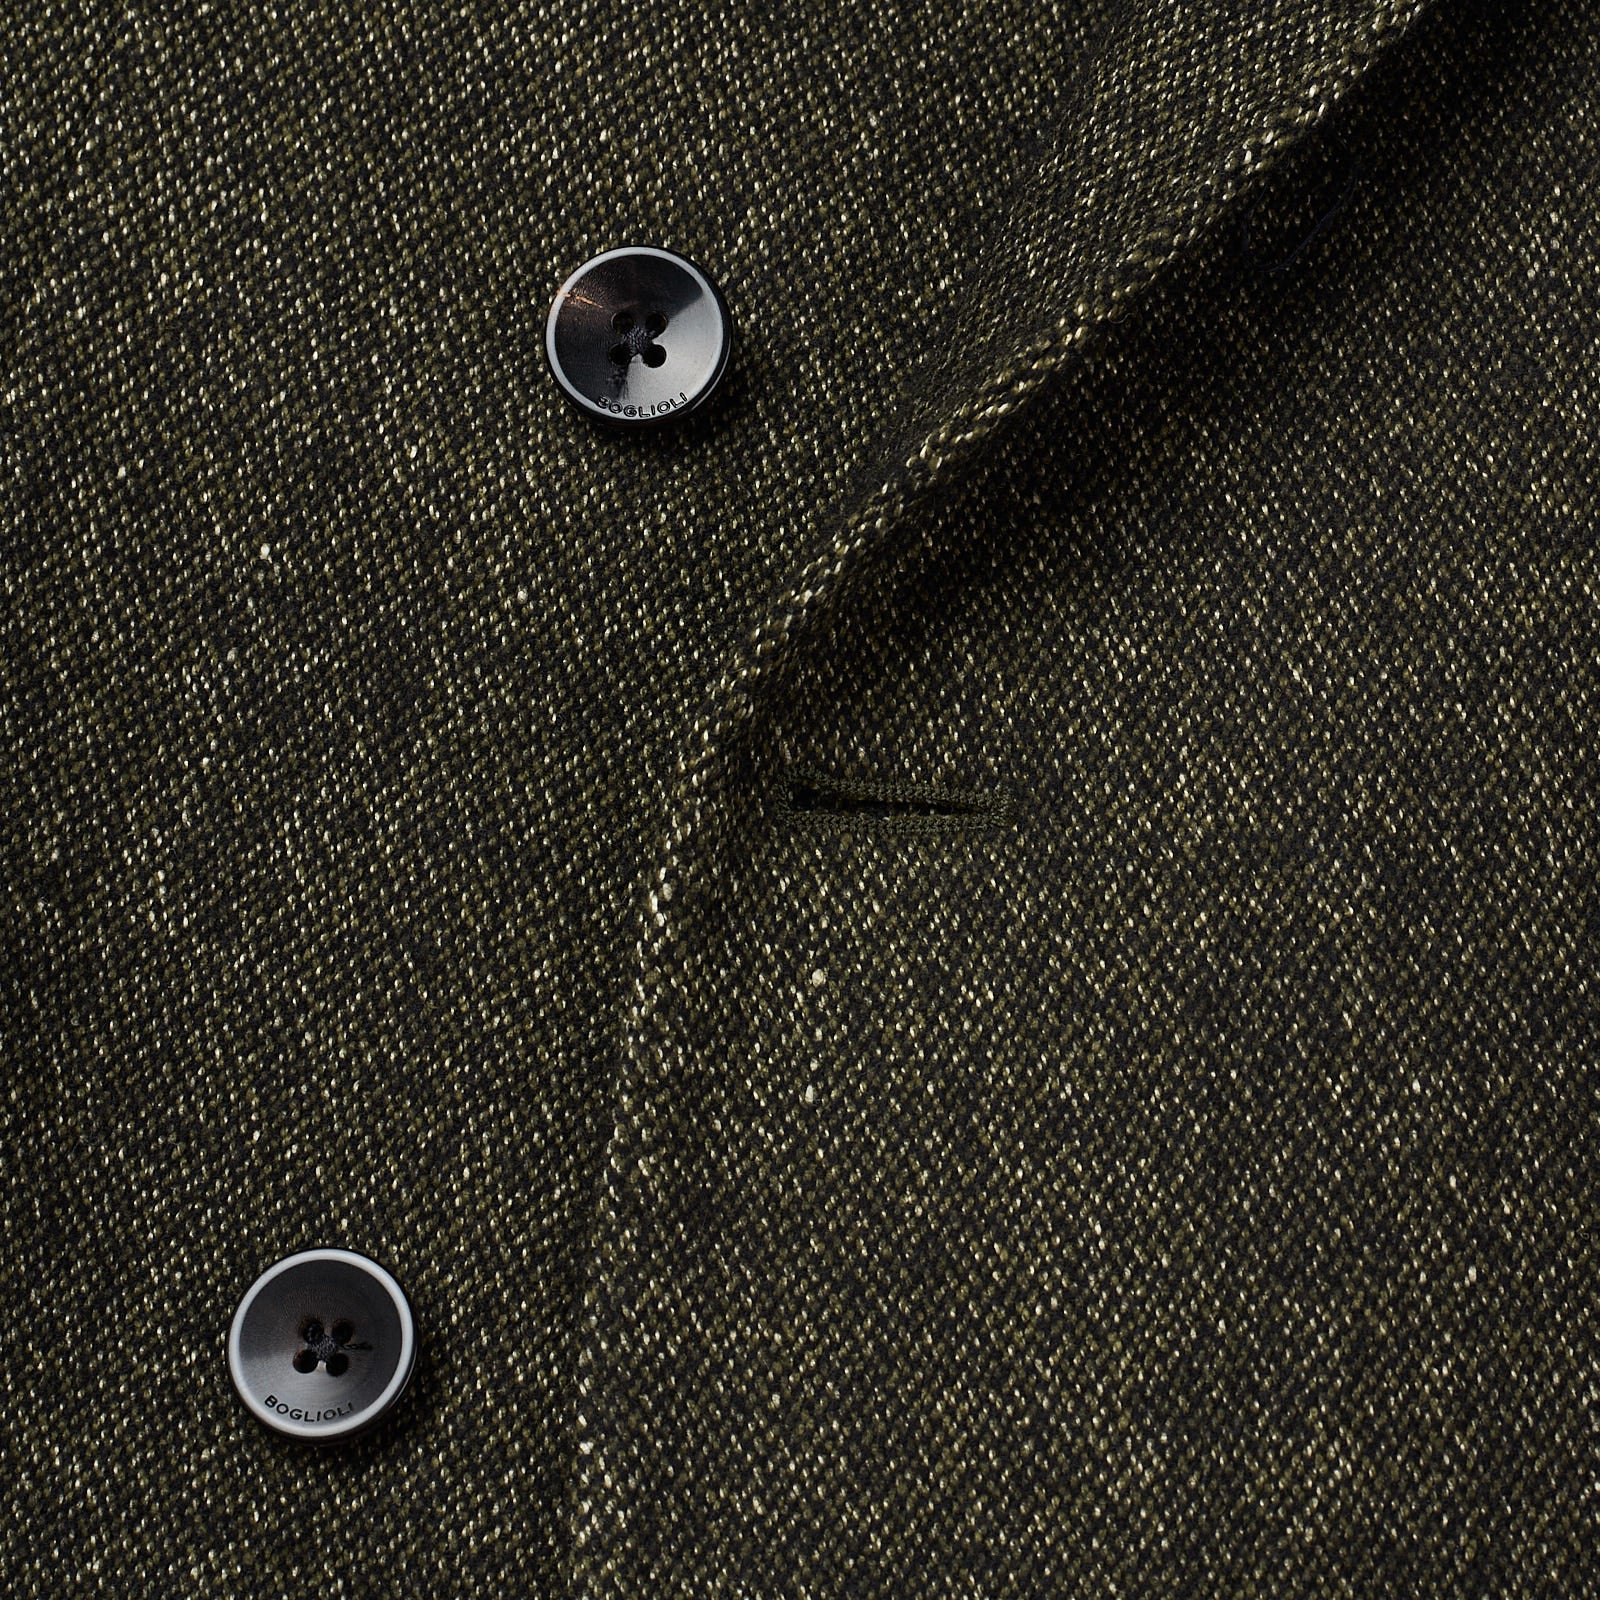 BOGLIOLI "K.Jacket" Green Wool-Silk-Linen-Cashmere Unlined DB Jacket EU 50 NEW US 40 BOGLIOLI